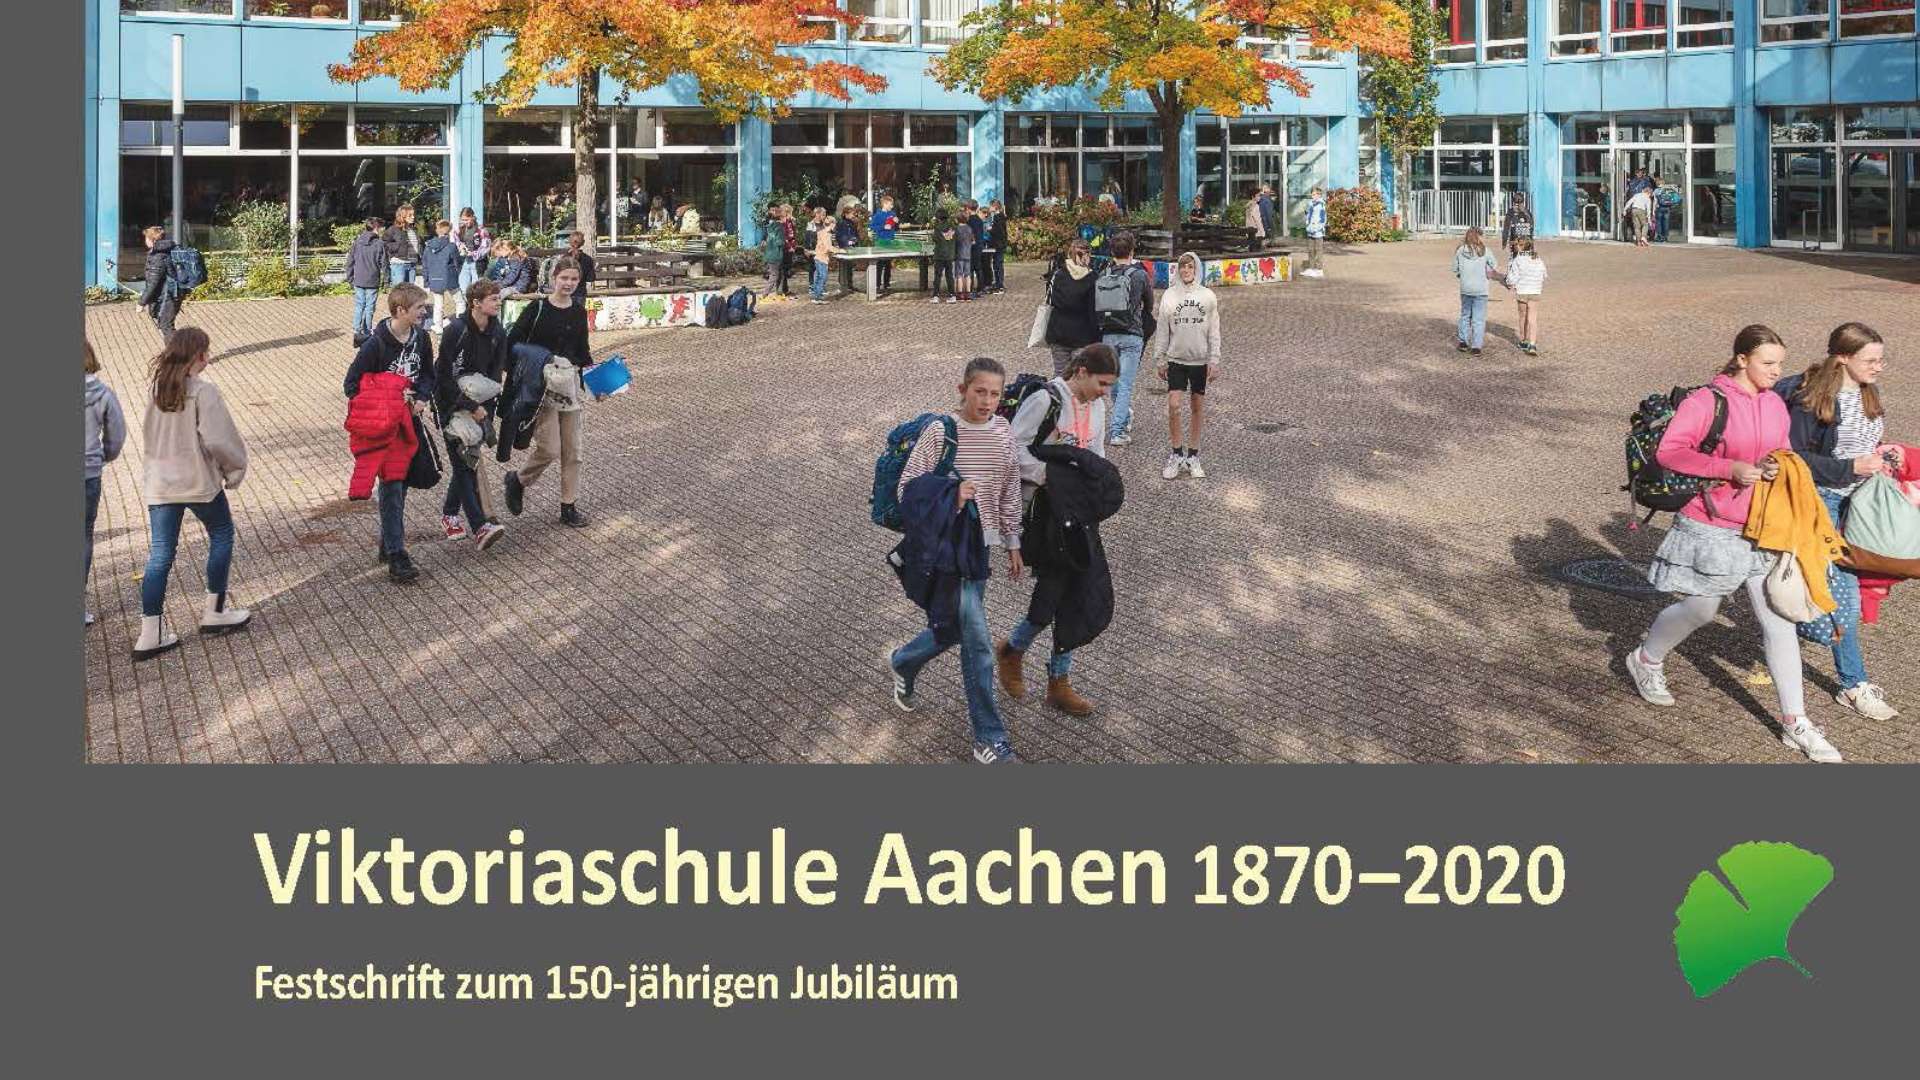 Festschrift zum 150-jährigen Bestehen der Viktoriaschule in Aachen